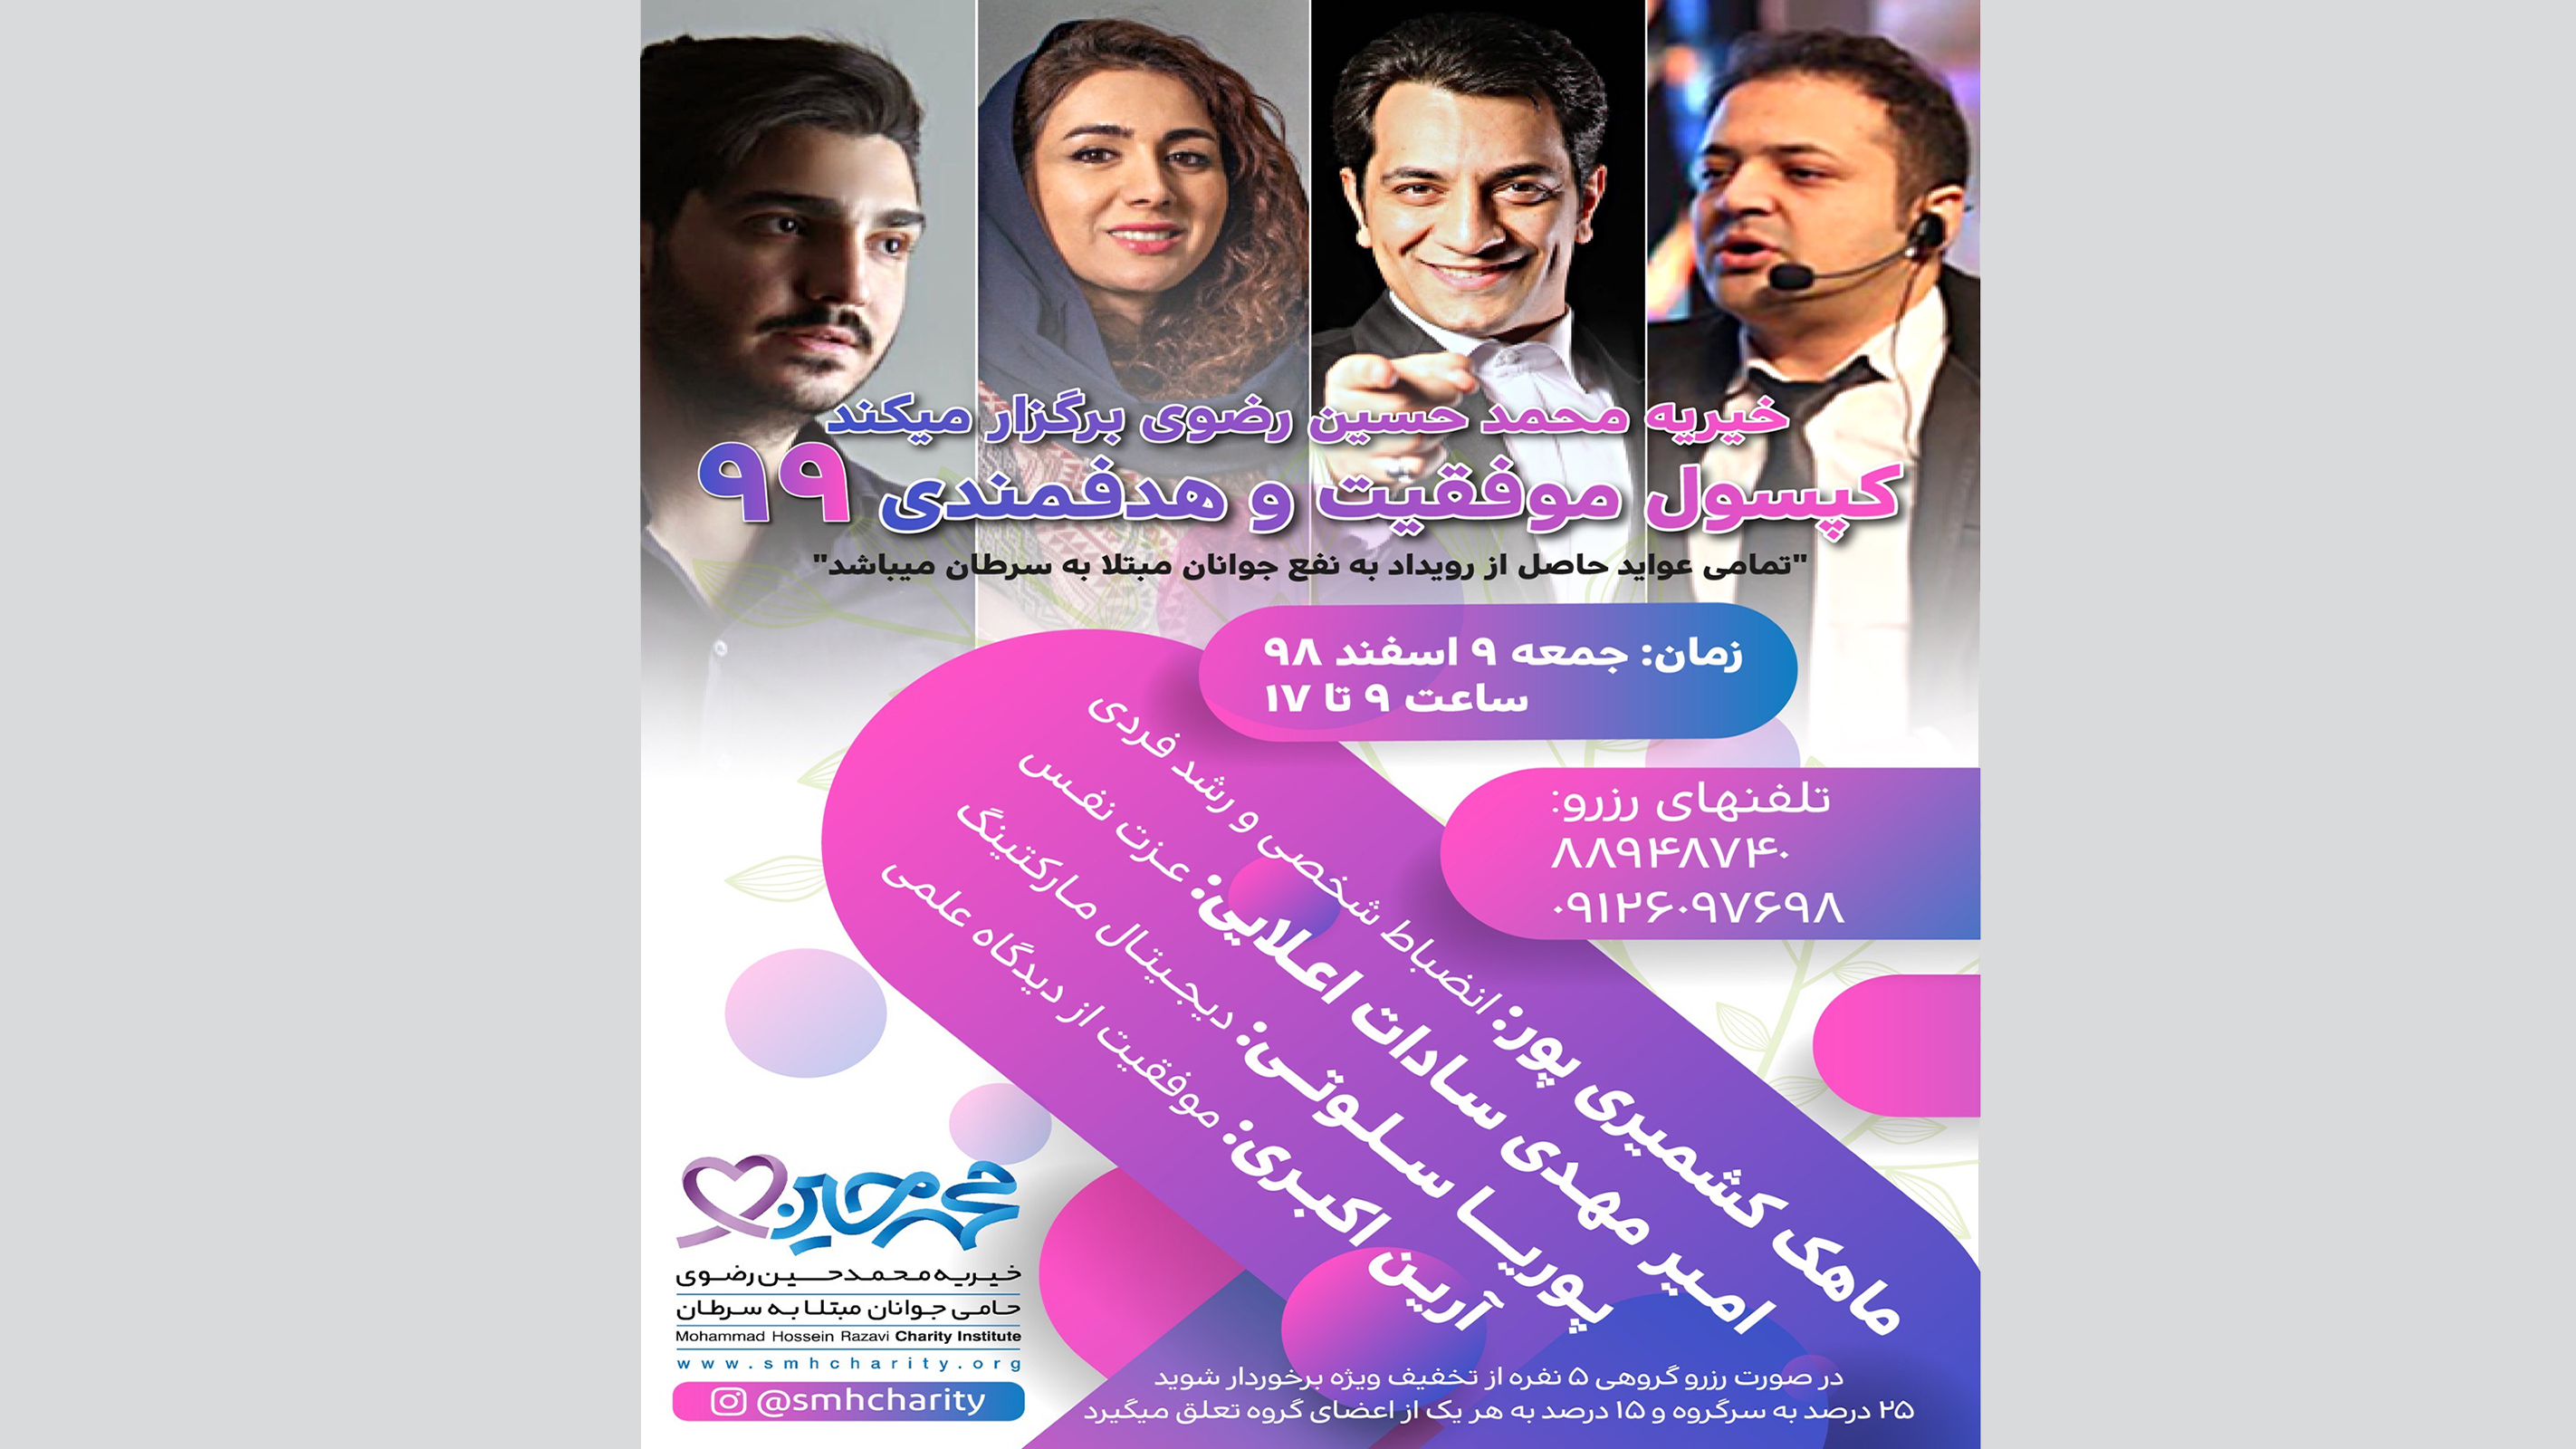  کپسول هدفمندی و موفقیت ۹۹ | خیریه محمد حسین رضوی | جوانان مبتلا به سرطان